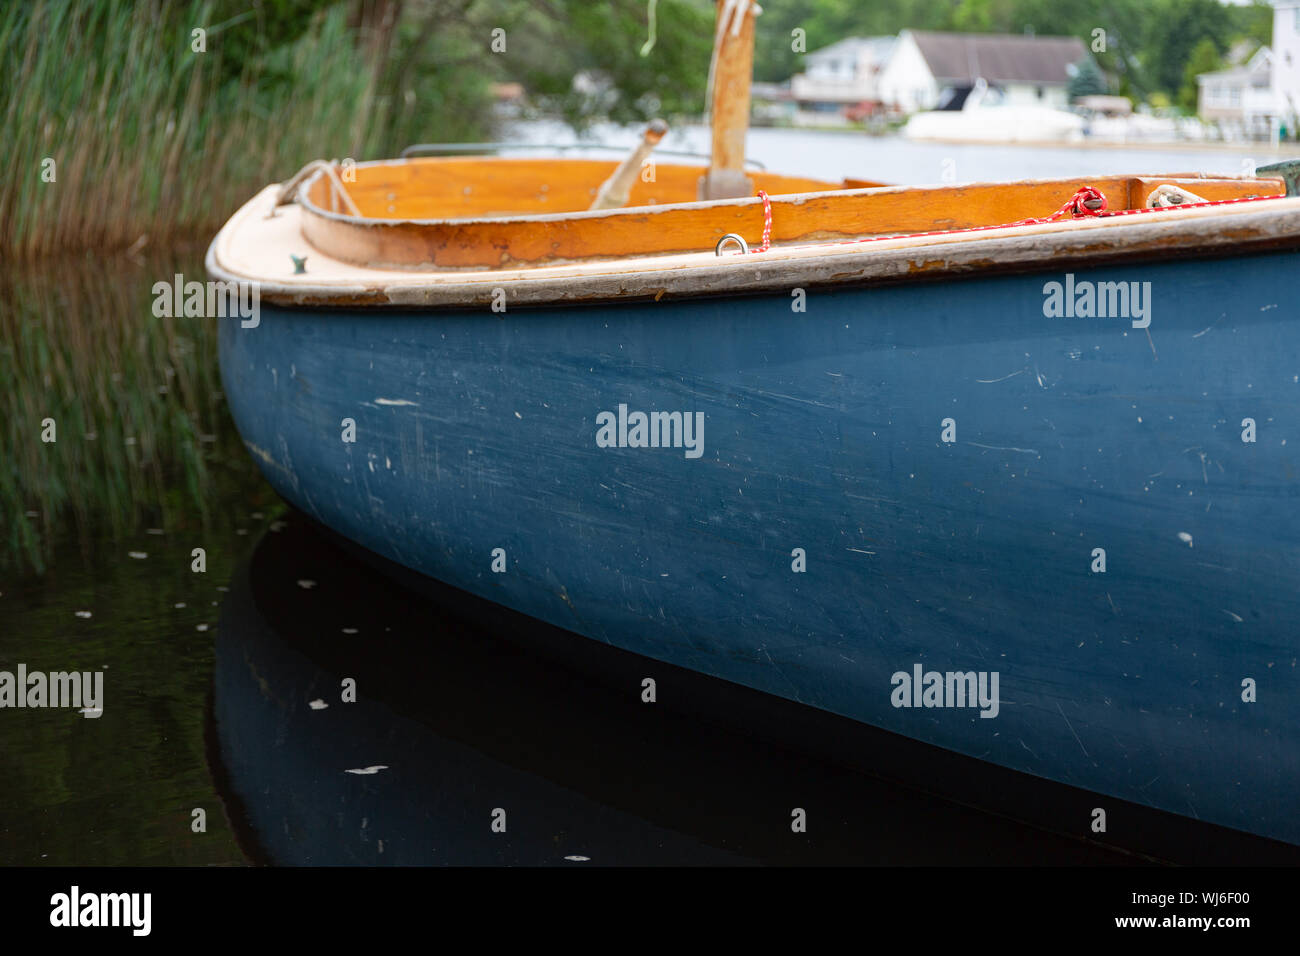 Chiudere la vista di una piccola barca a vela con scafo blu galleggiante su una via navigabile con case in background. Foto Stock